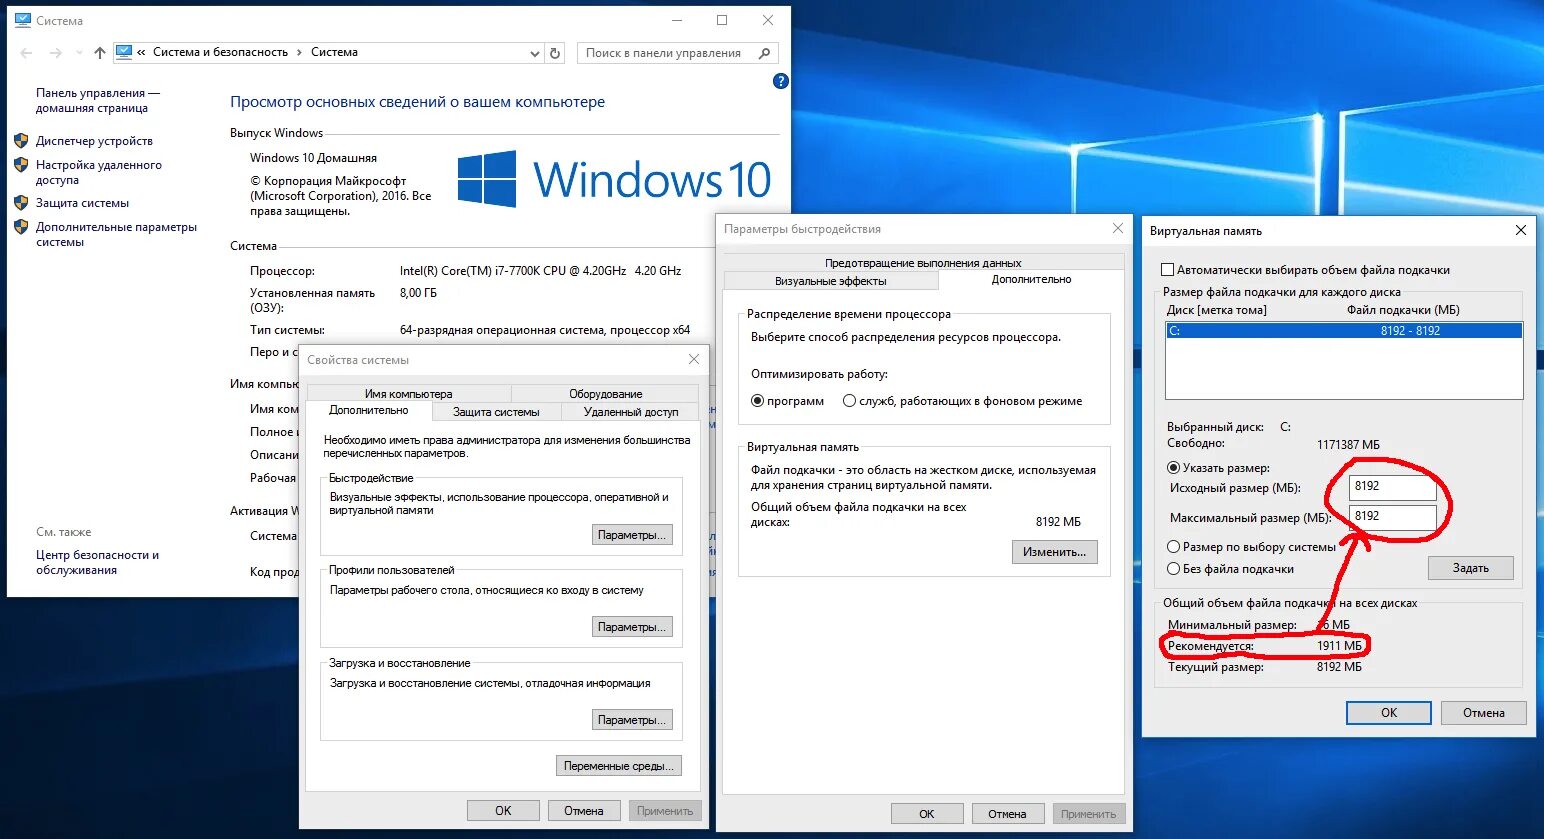 Виртуальная память сколько. Файл подкачки виндовс 10 таблица. Виртуальная память файл подкачки Windows 10. Подкачка оперативной памяти Windows 10. Как поставить файл подкачки в виндовс 10.